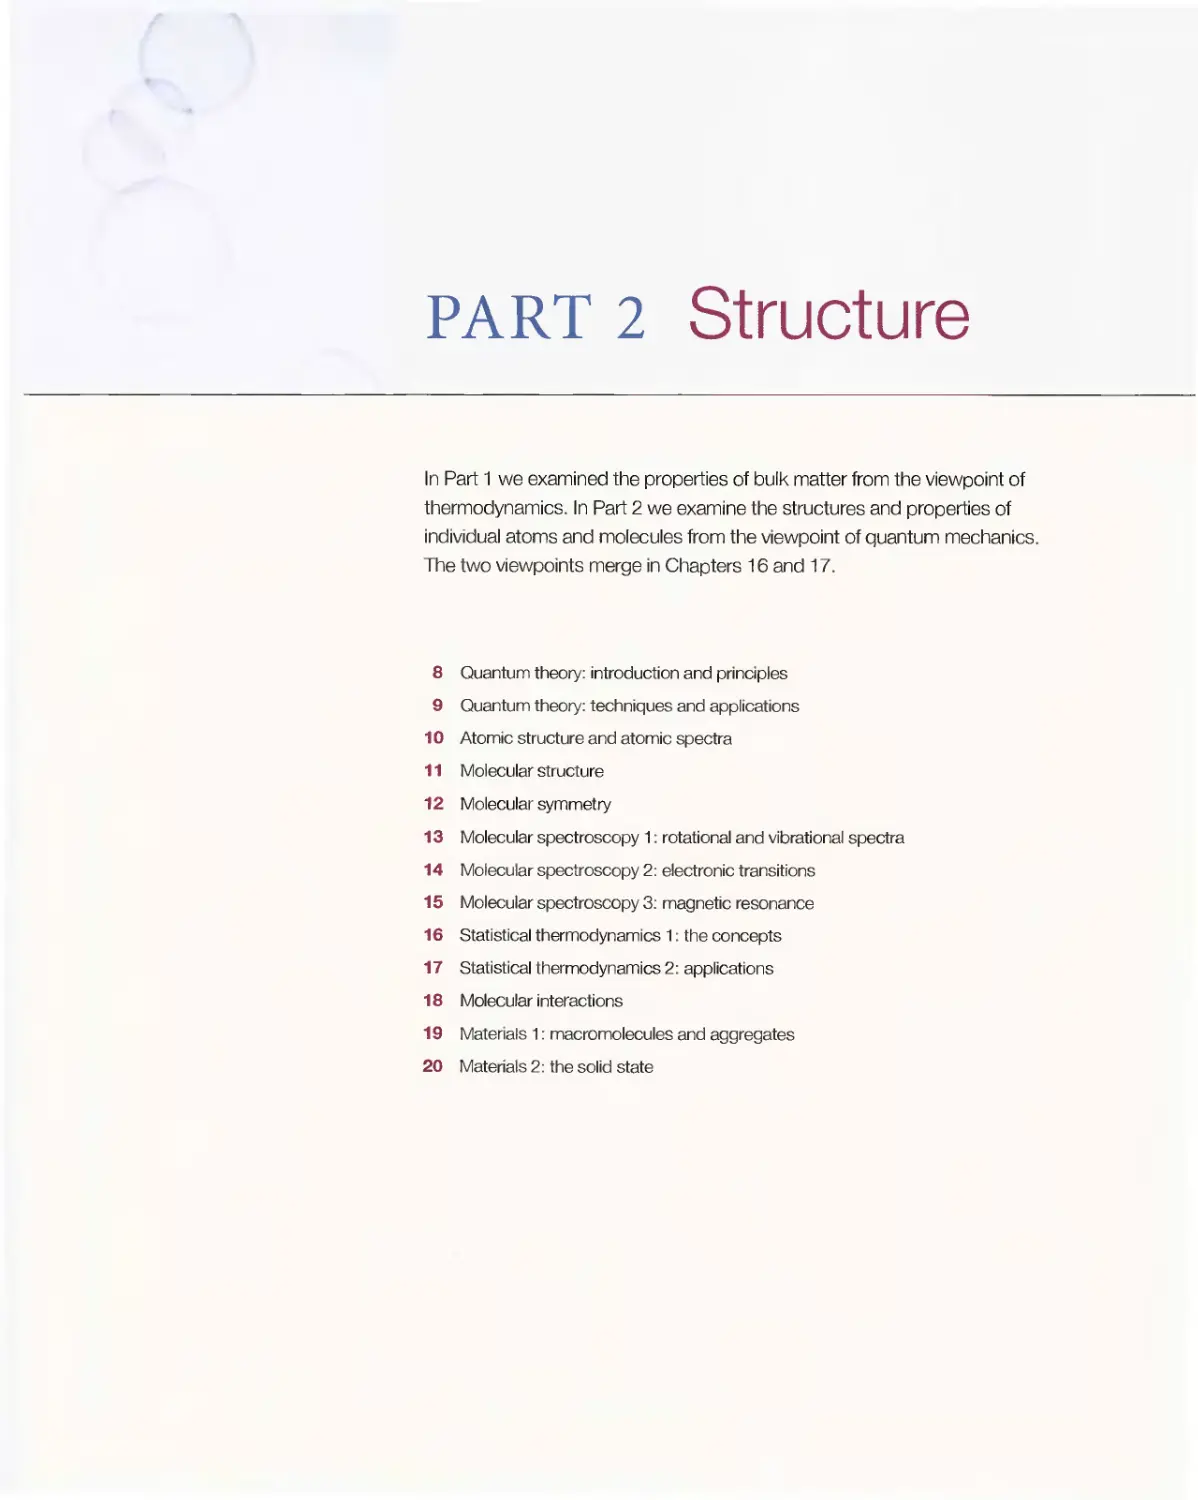 Part 2 - Structure